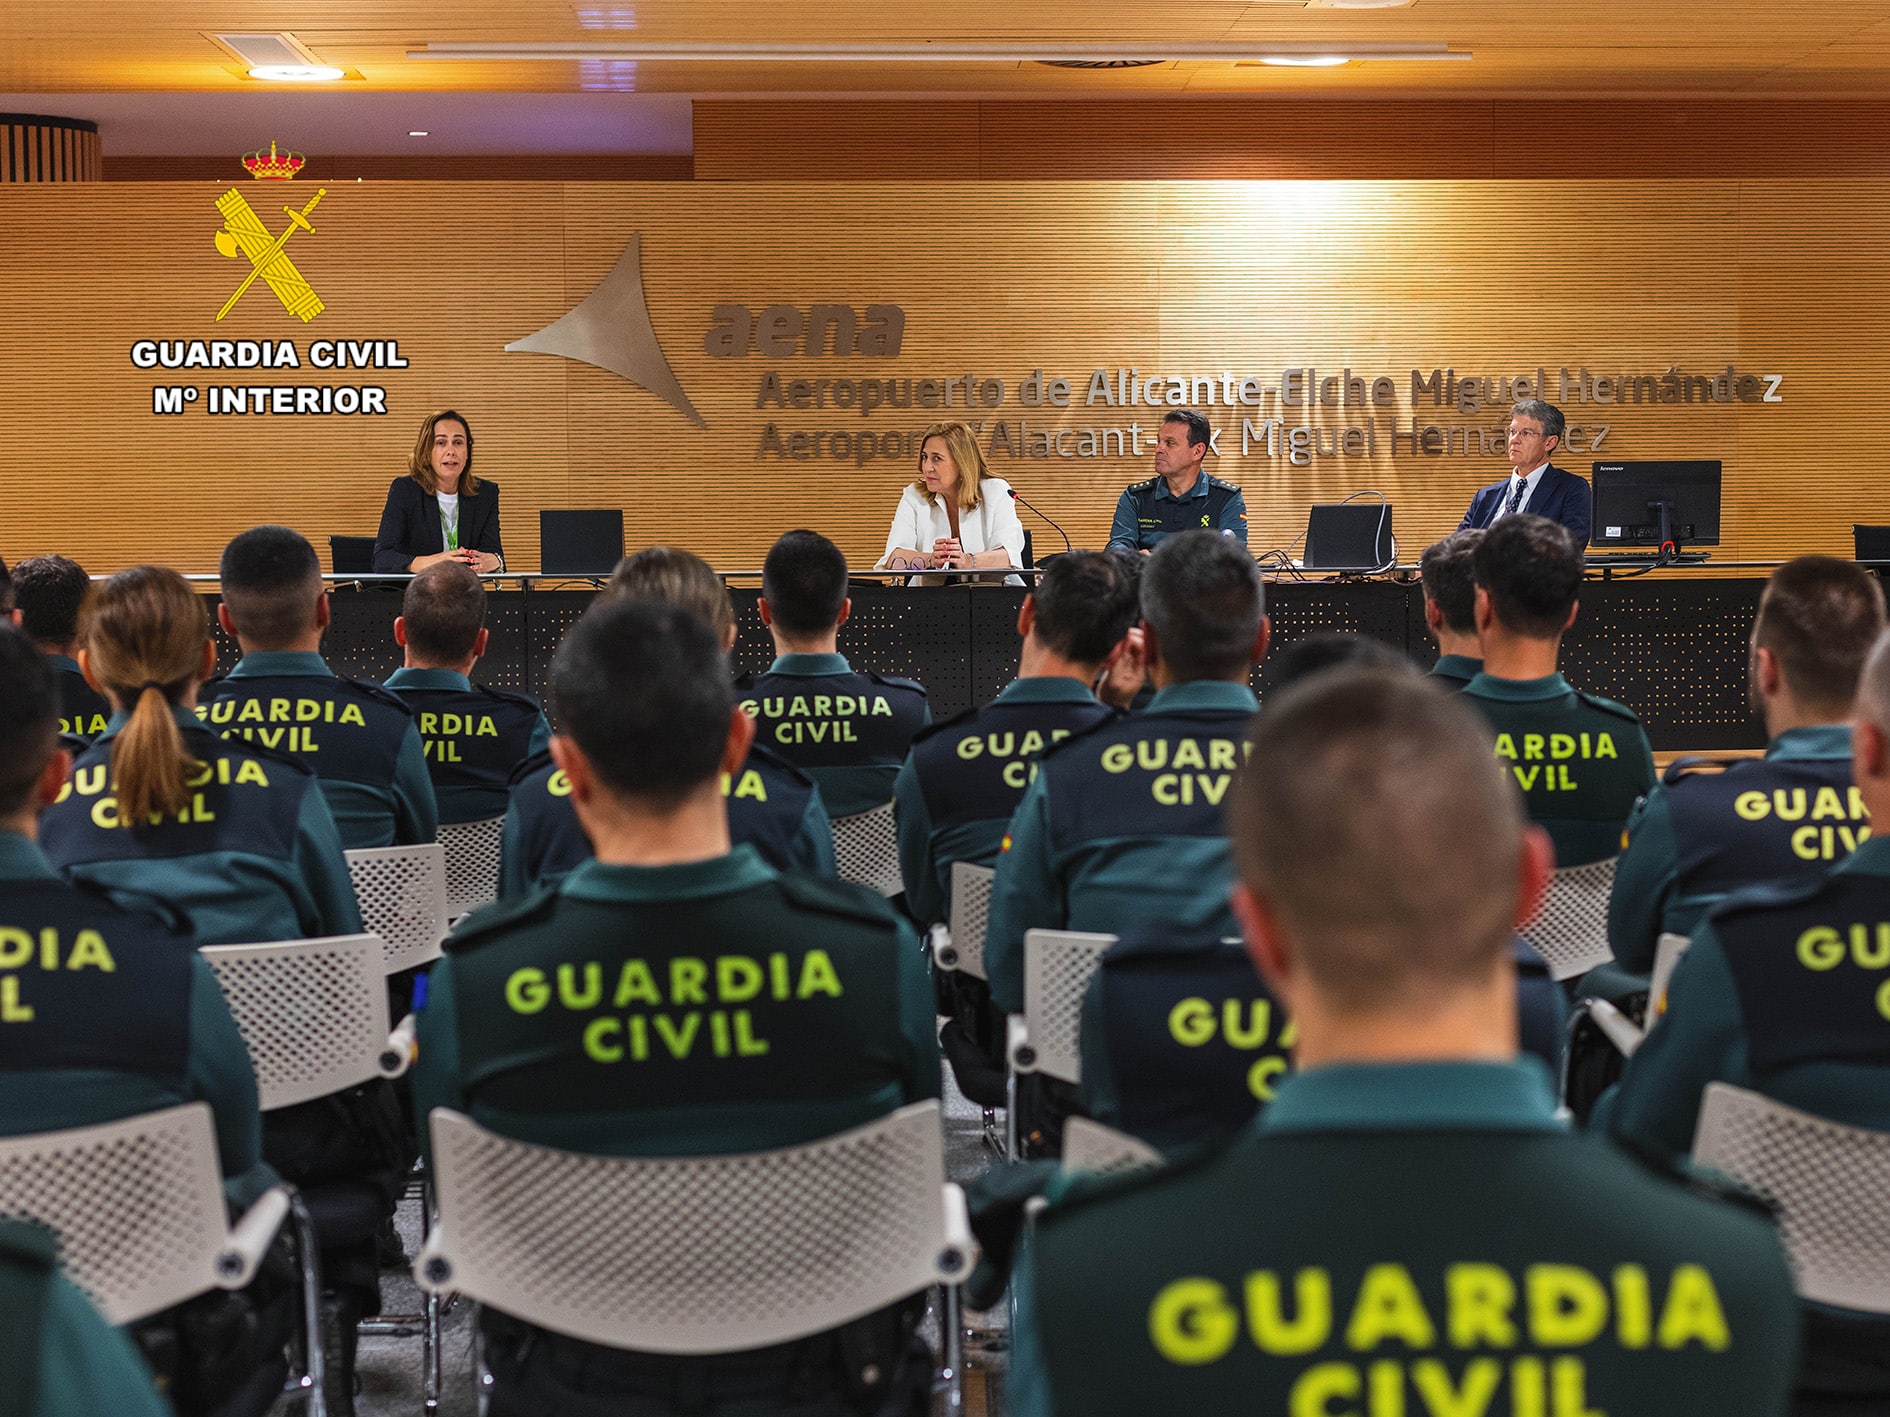 <strong>La Guardia Civil presenta la nueva incorporación de plantilla del Aeropuerto de Alicante – Elche Miguel Hernandez </strong>